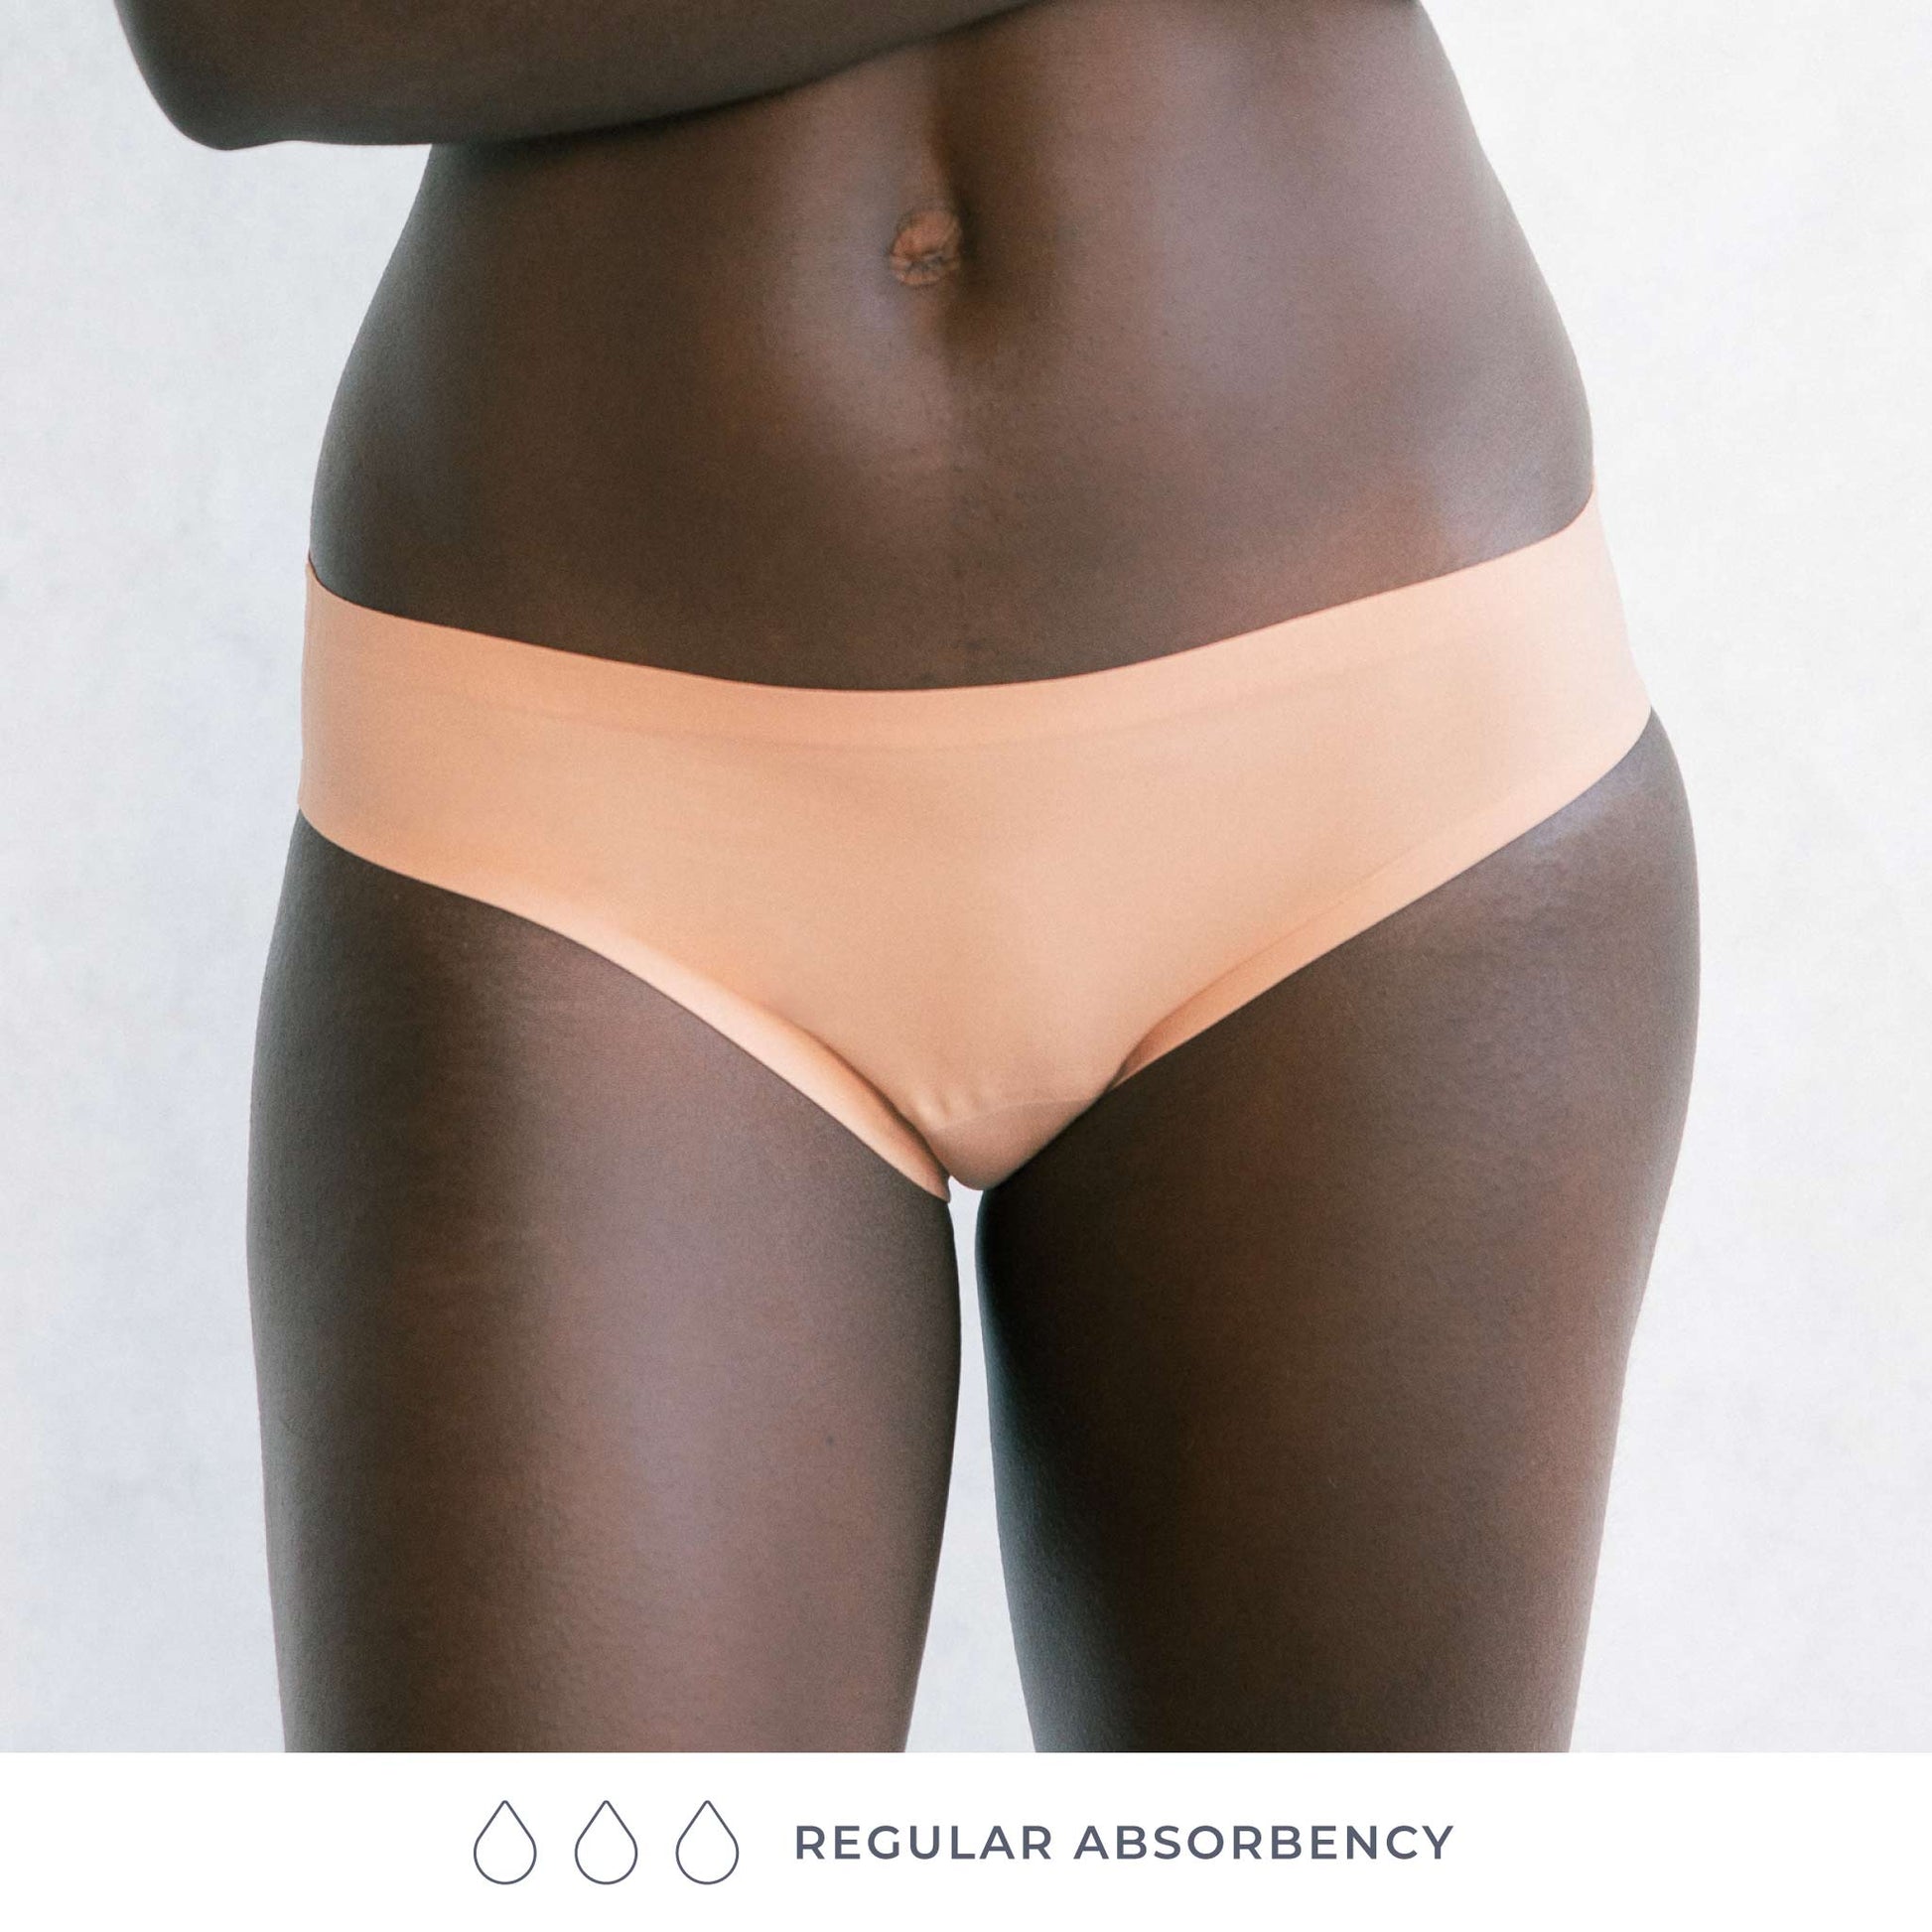 Attributes Seamless 4-Way Stretch Bikini 5-Pack Size Small Panties